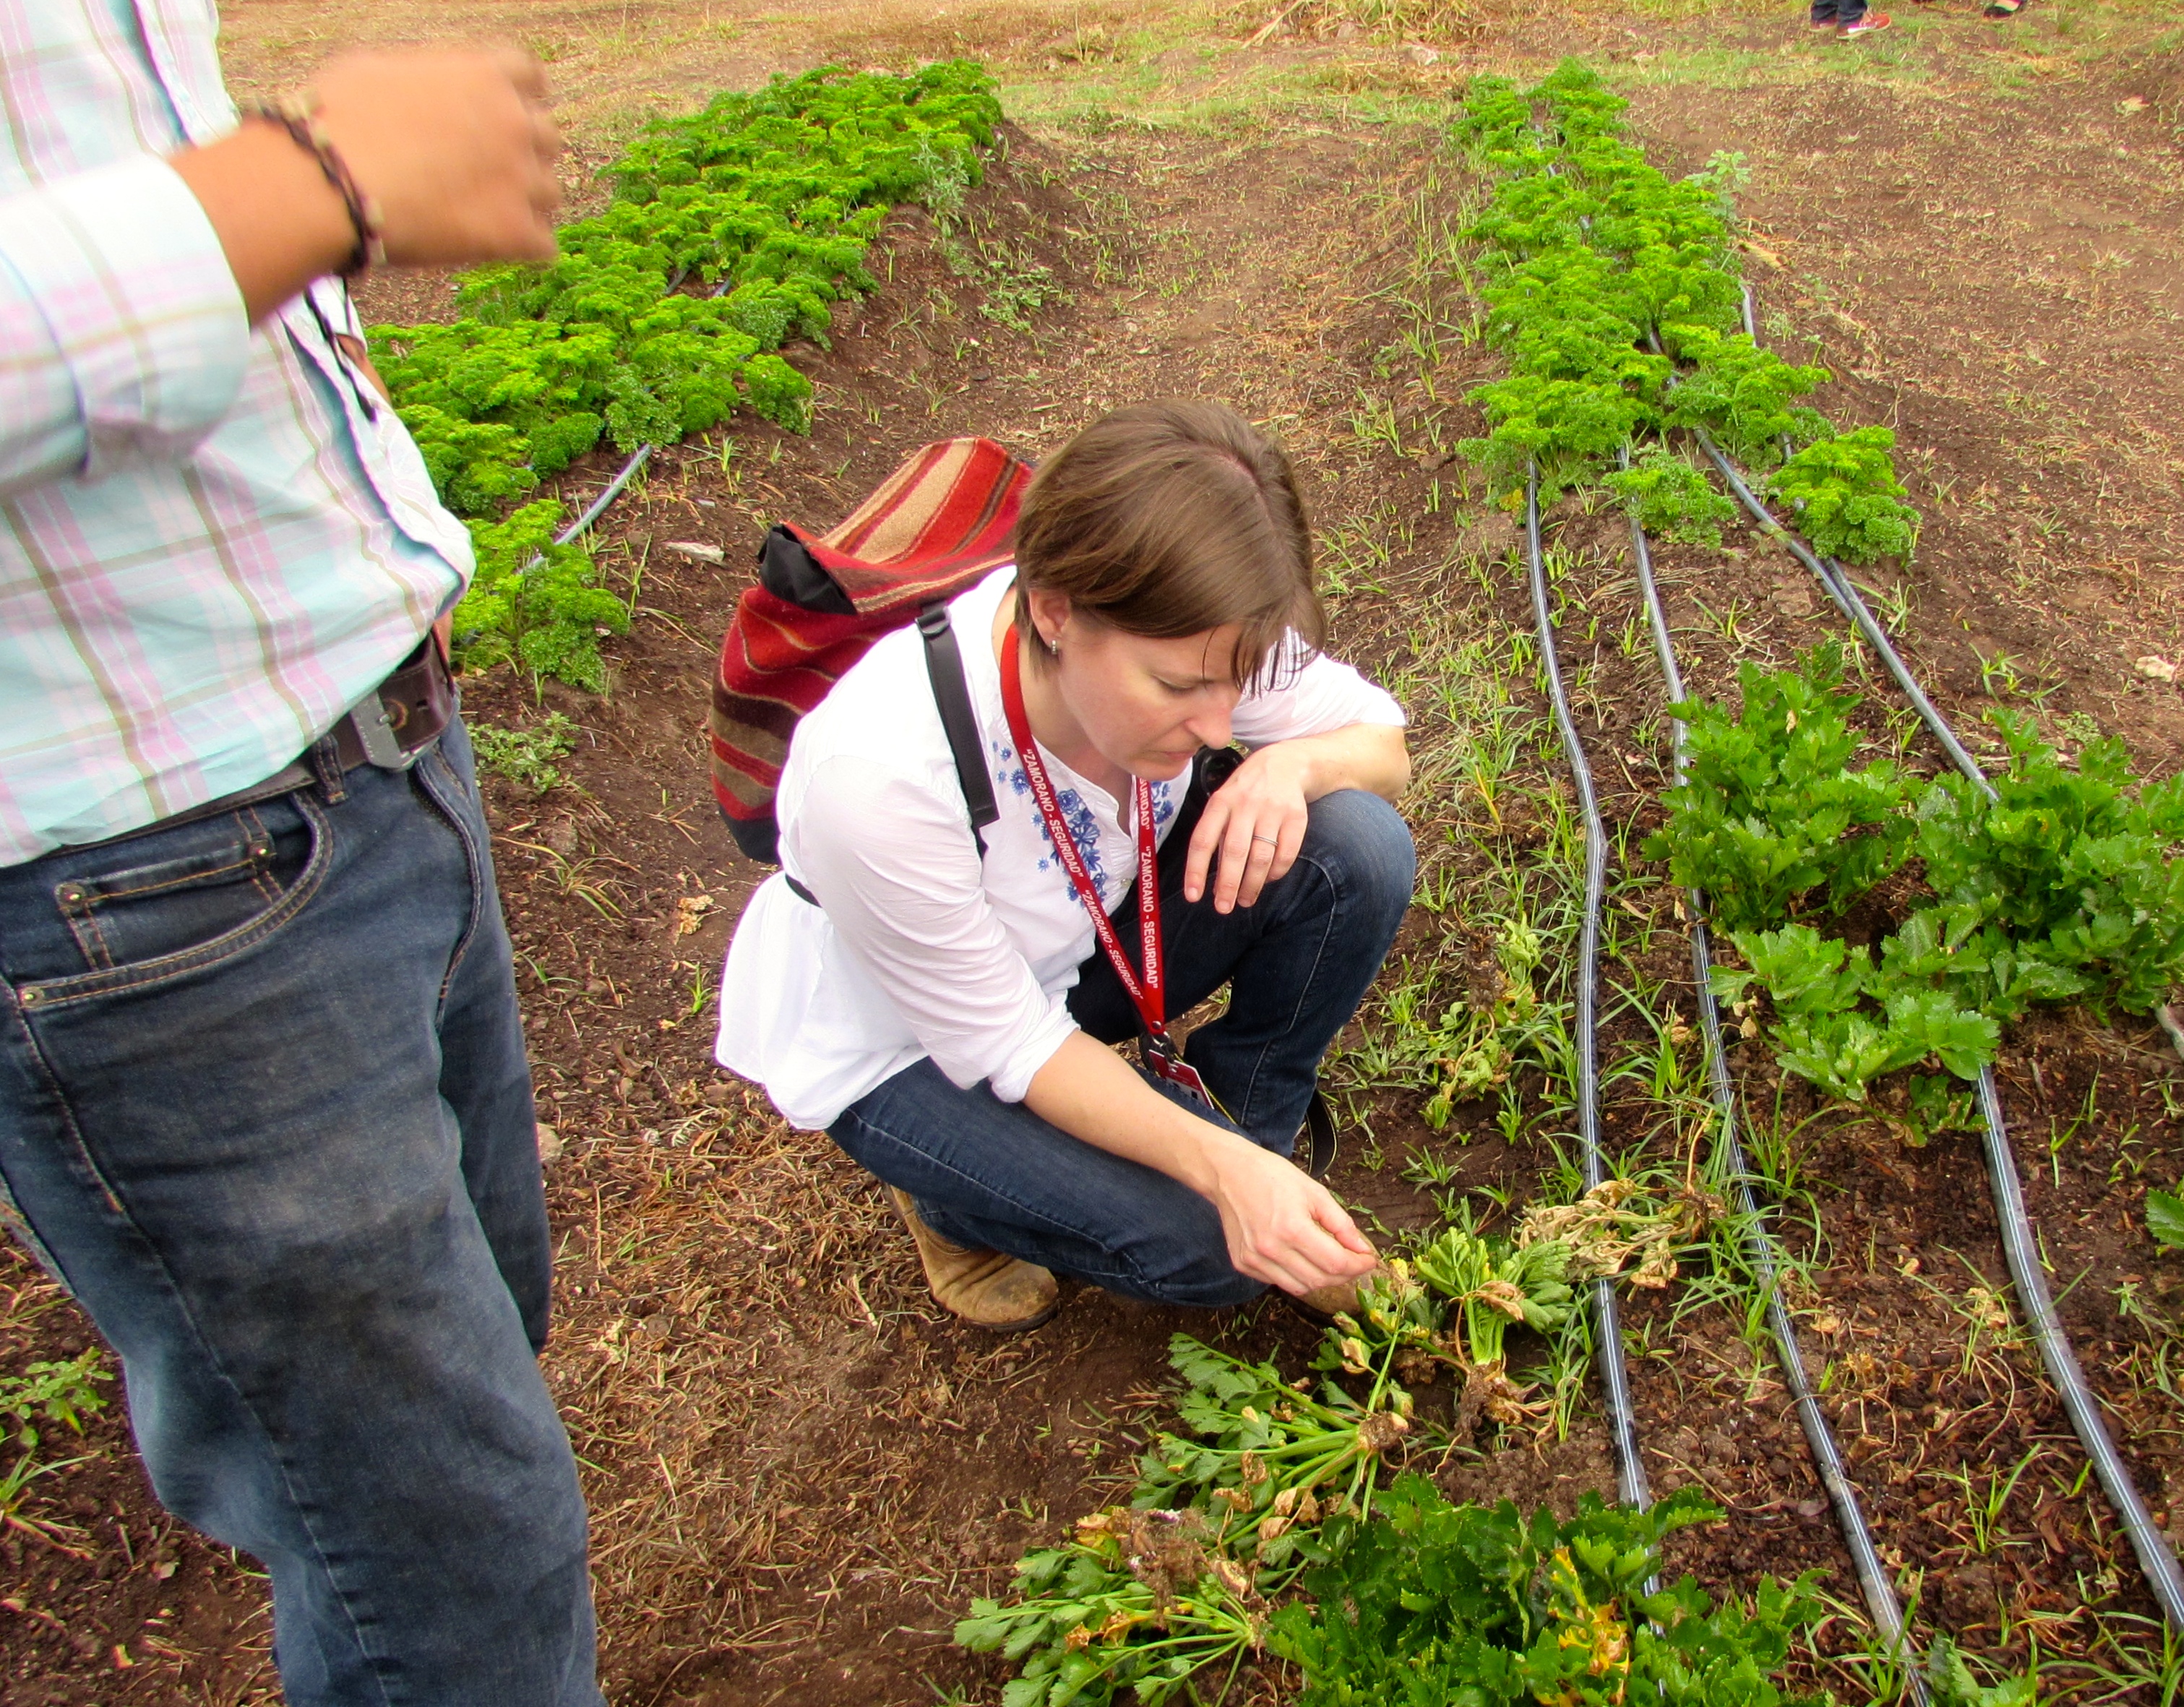 Gugino in Honduras to Examine Celery